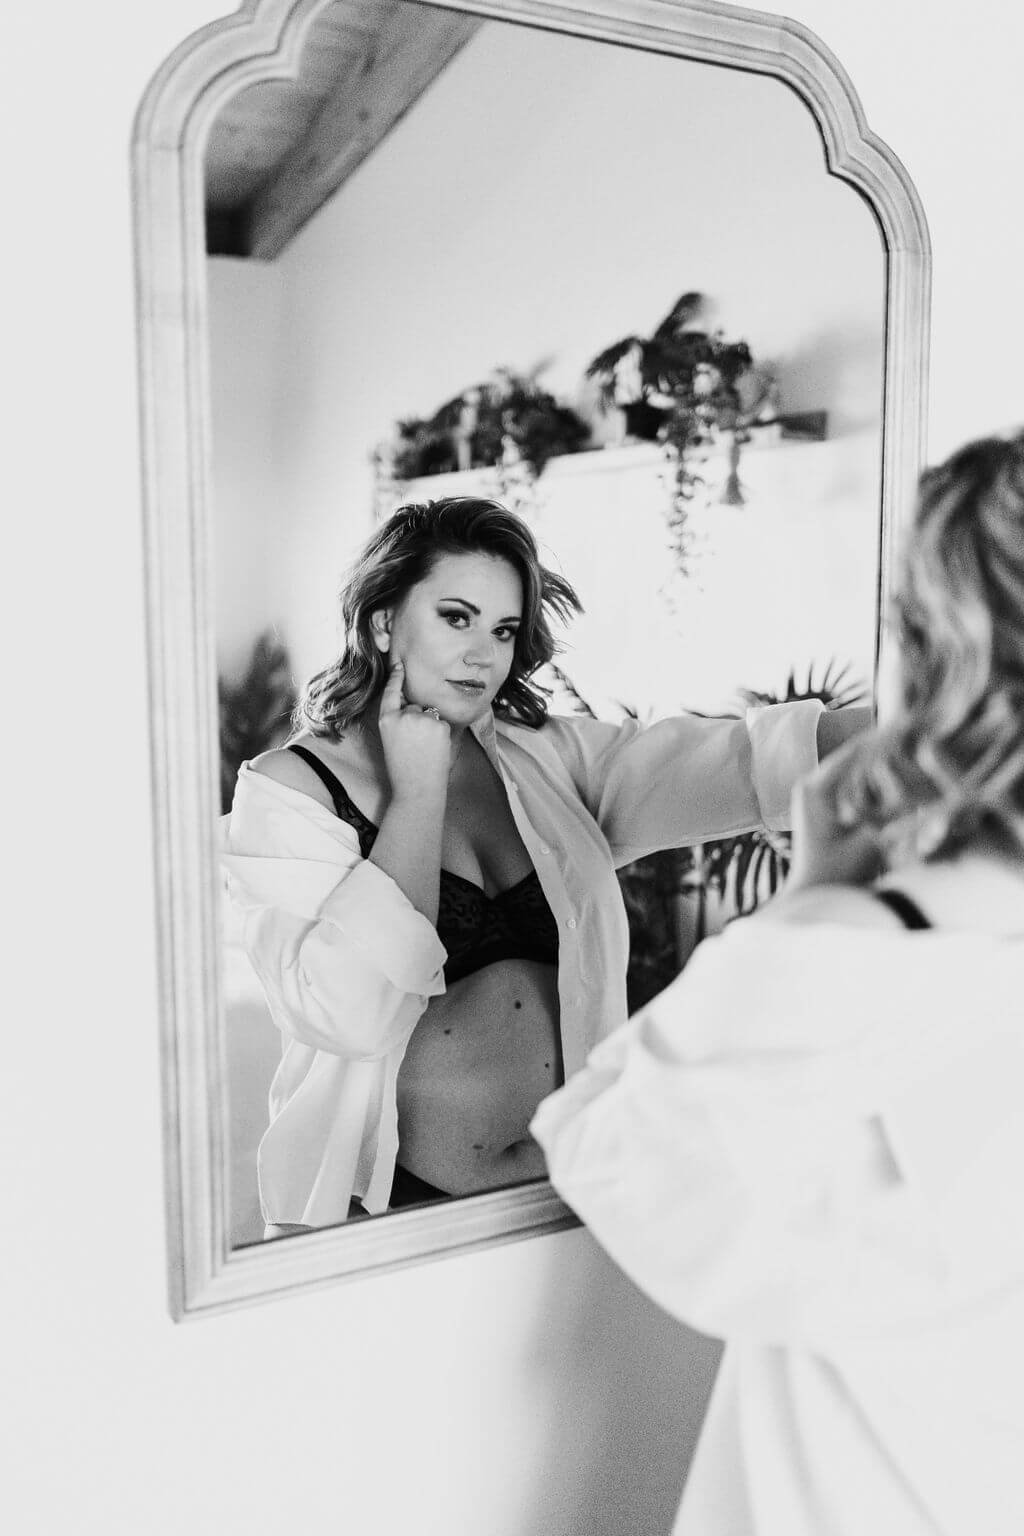  Woman mirror reflection black and white boudoir photoshoot 